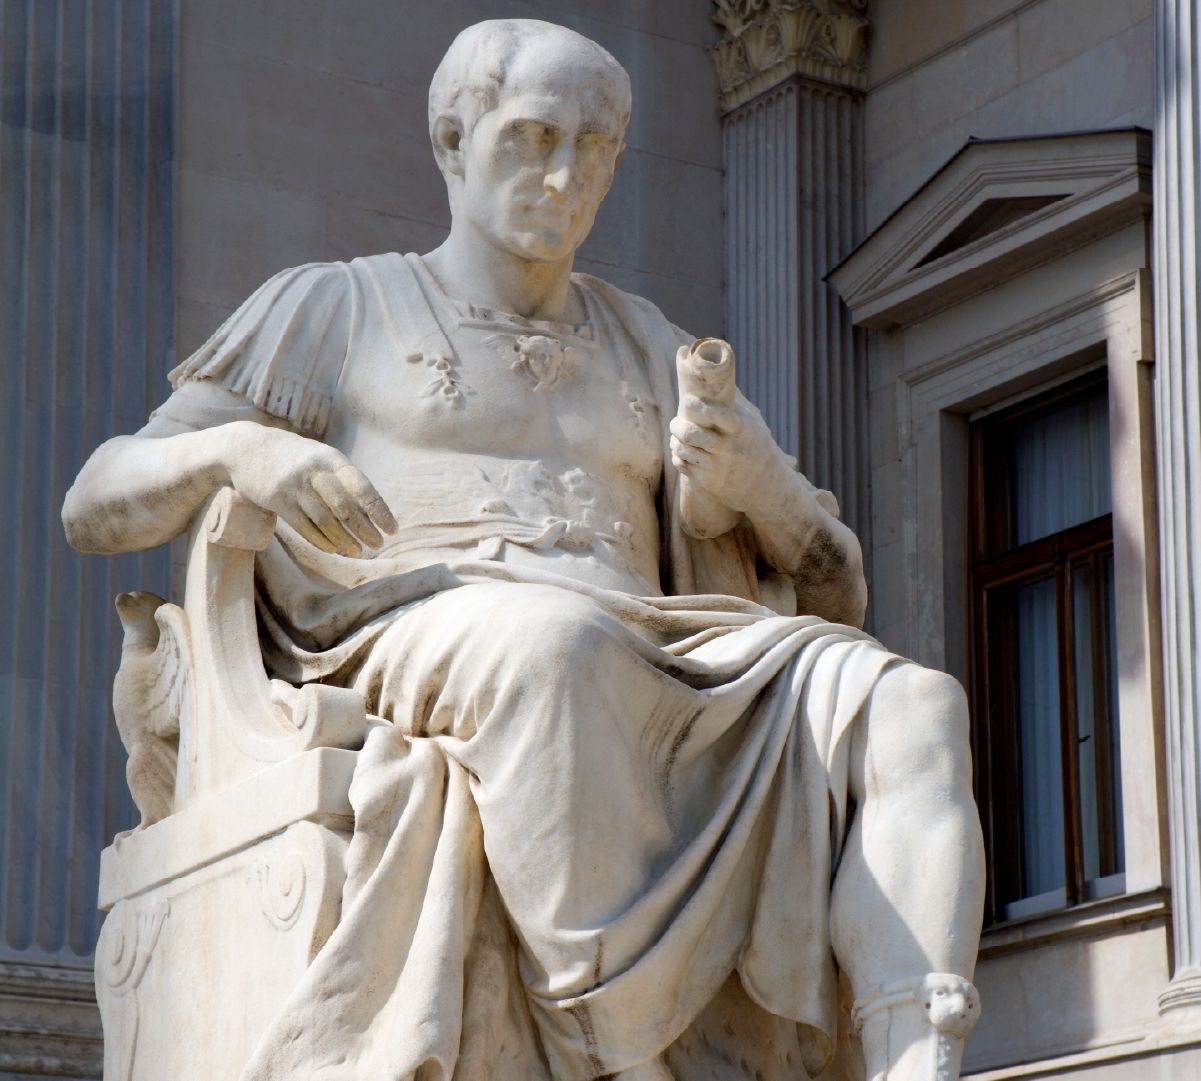 Julius Caesar statue in front of the Austrian parliament building.